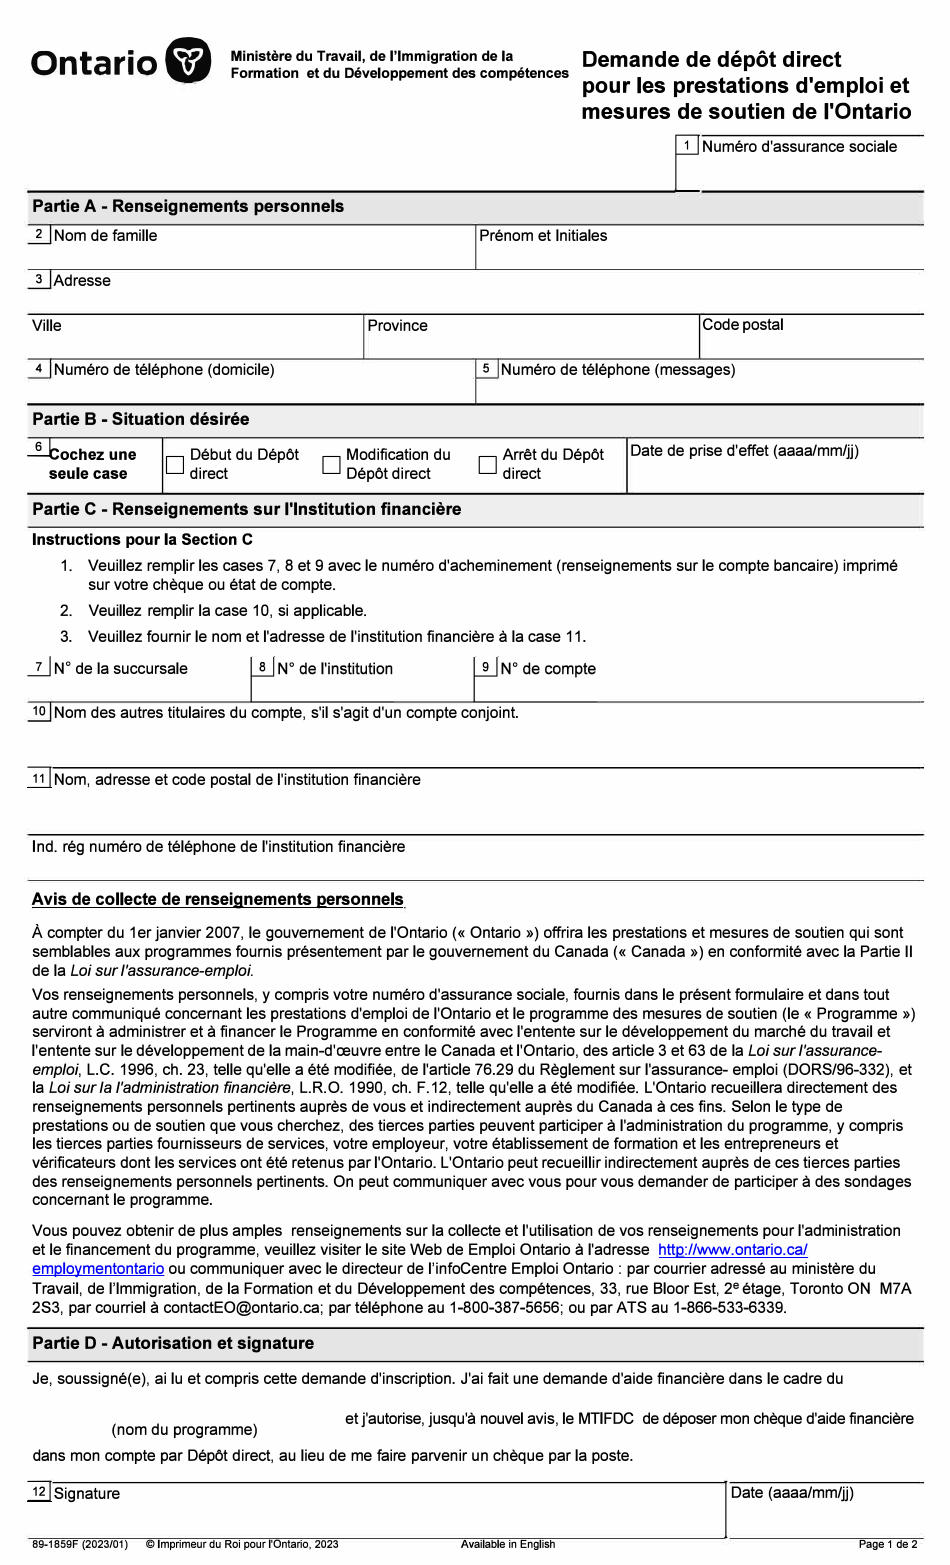 Forme 89-1859F Demande De Depot Direct Pour Les Prestations Demploi Et Mesures De Soutien De Lontario - Ontario, Canada (French), Page 1